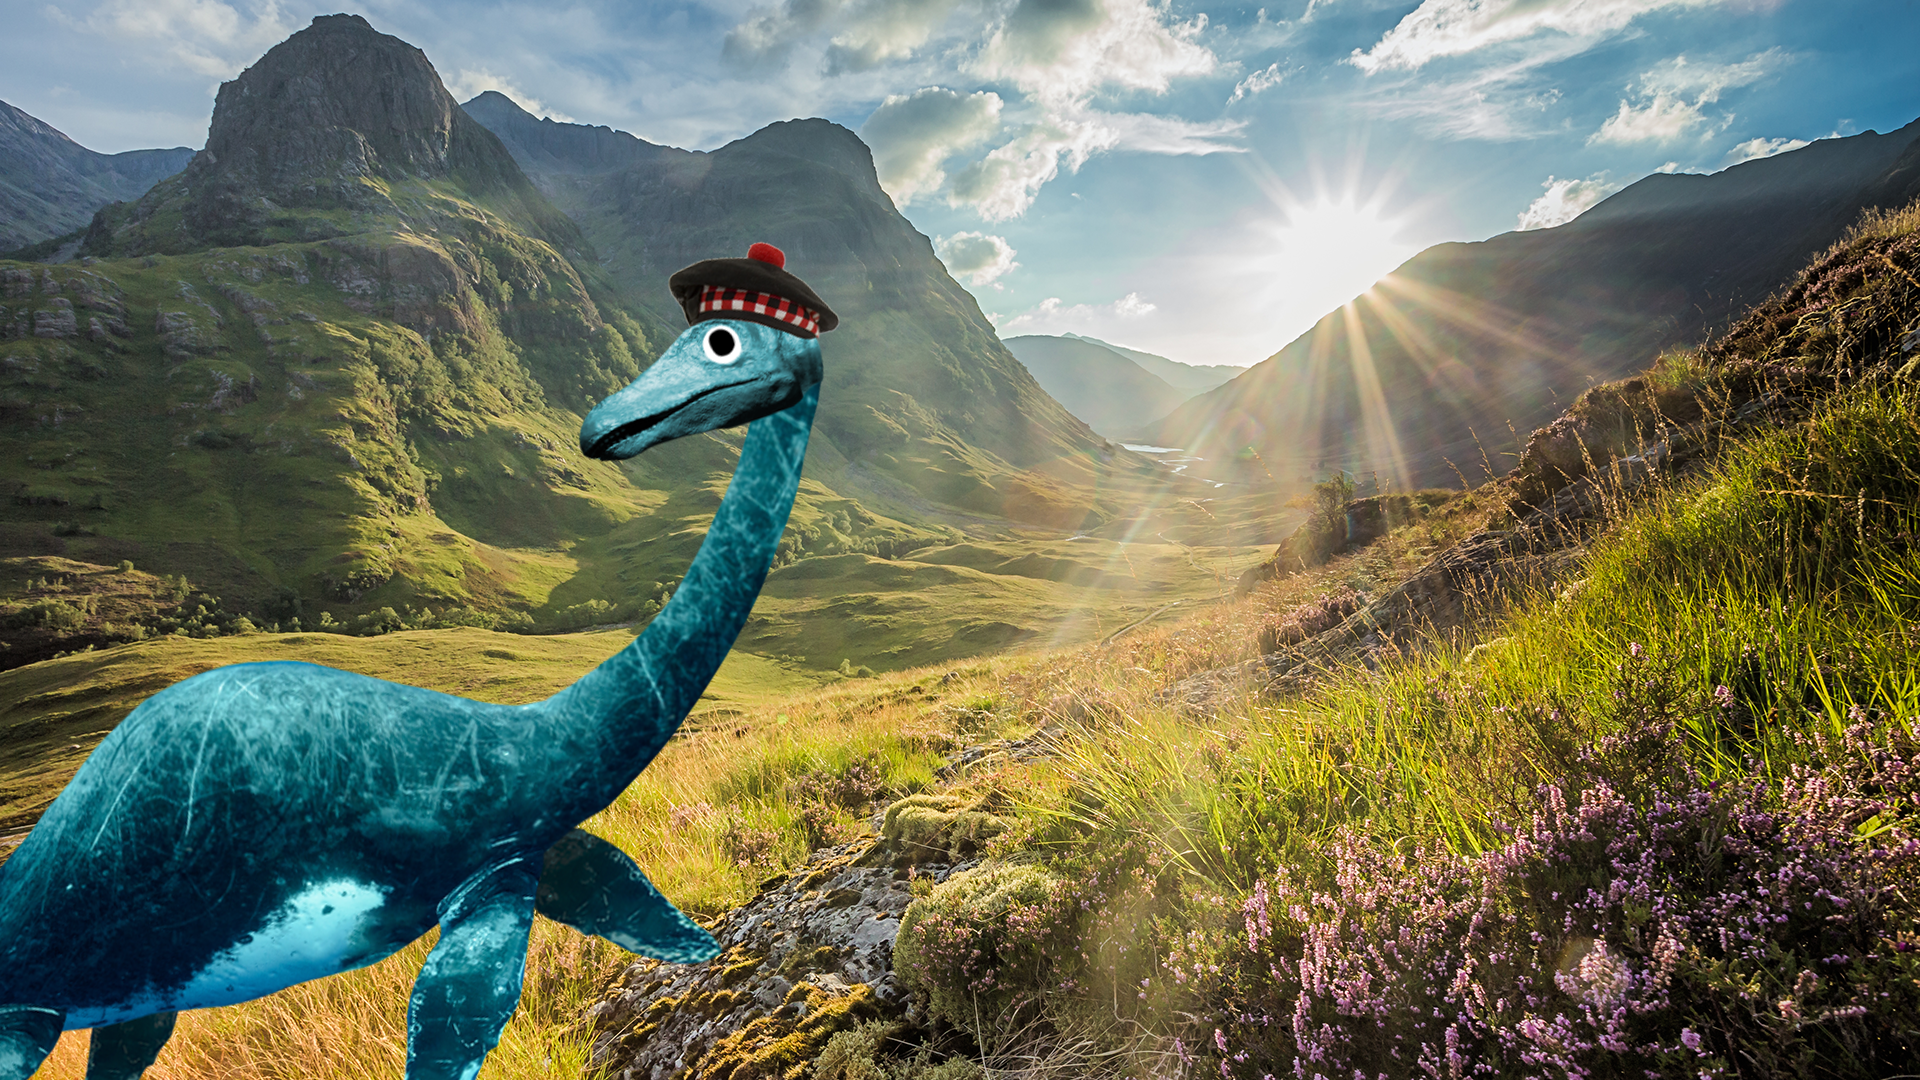 A dinosaur walking around grassy hills